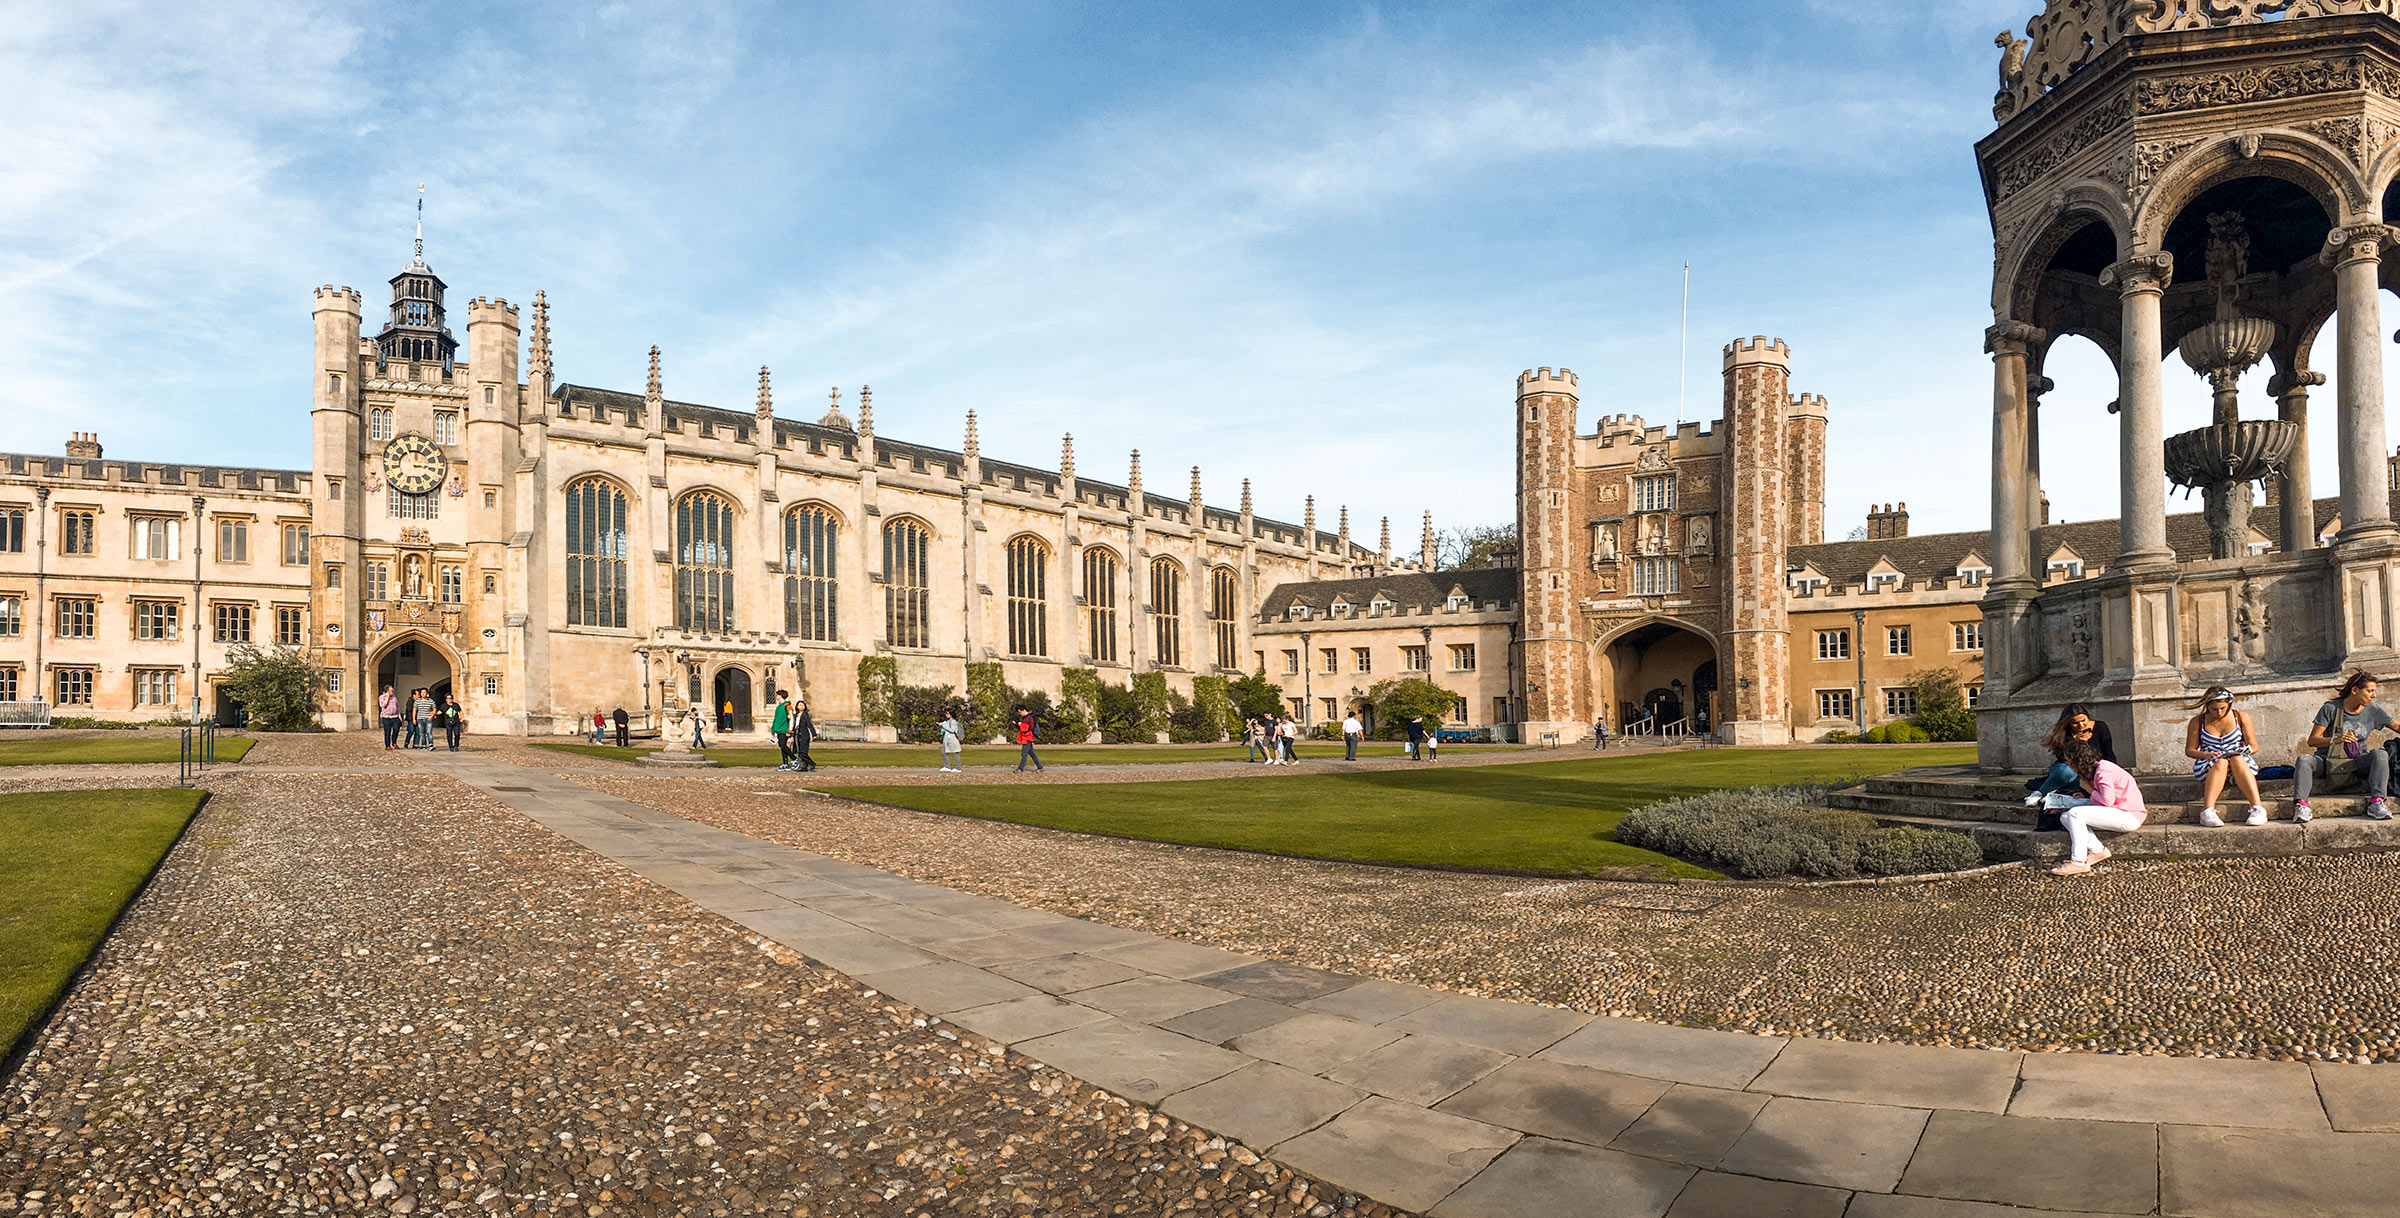 King's College, Université de Cambridge, Cambridge, Angleterre / King's College, Cambridge, England, UK.